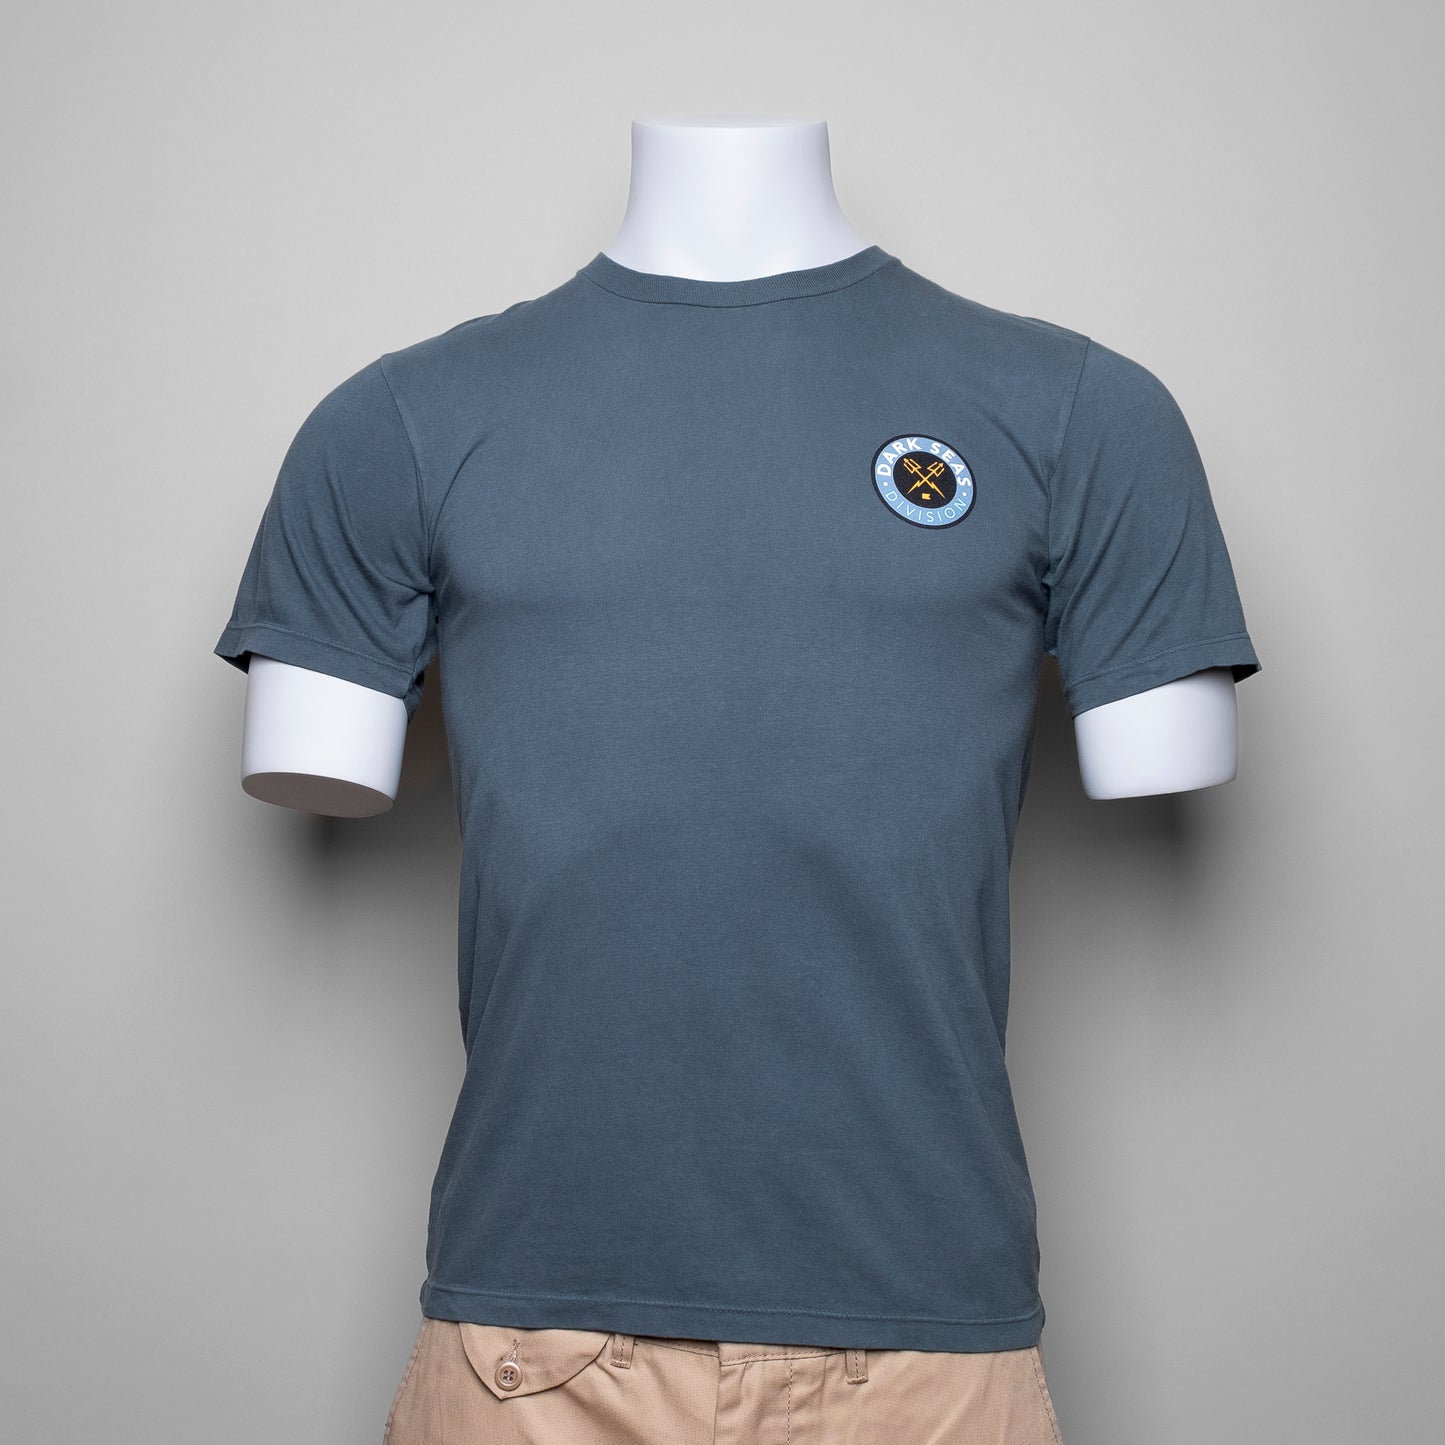 Das DARK SEAS "Delivery Boy" T-Shirt ist aus 100% Baumwolle gefertigt und bietet eine figurbetonte Passform. Der schmale Schnitt wird ergänzt durch den kleinen Logo Print auf der Brust und den eindrucksvollen "Pelikan" Print auf dem Rücken des T-Shirts.